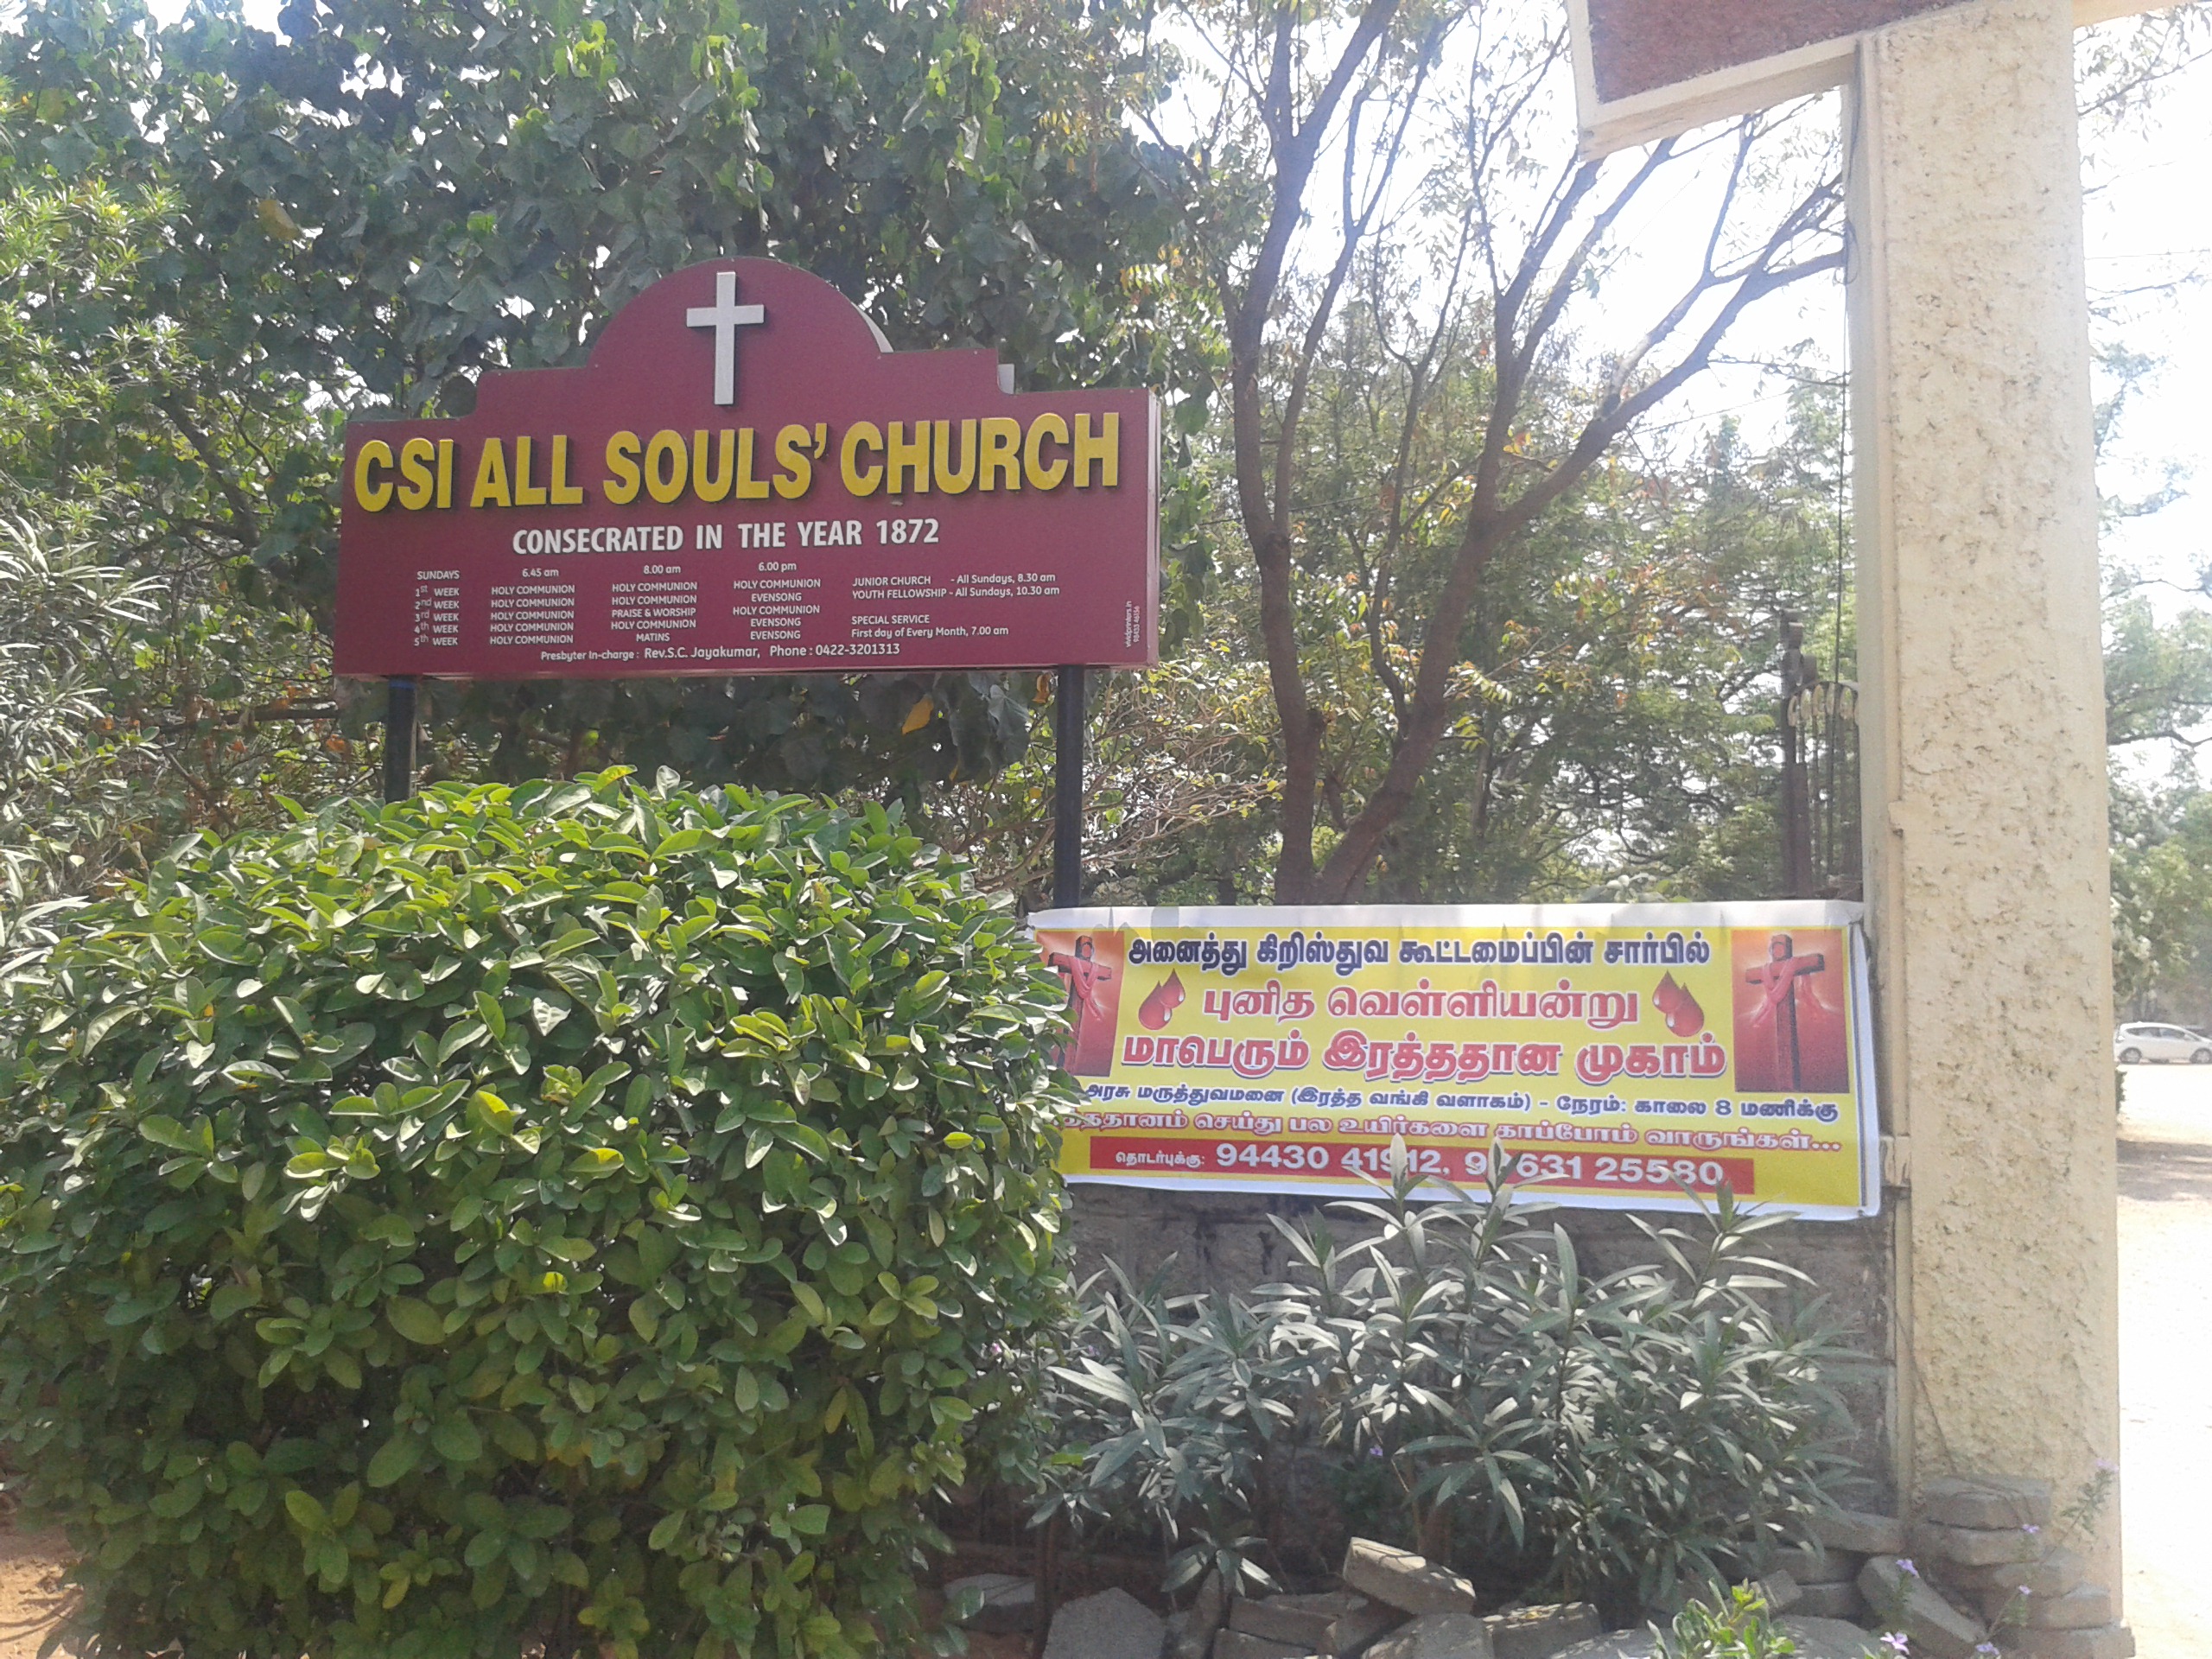 Die Anglikanische Kirche. Das ist meine Gemeinde vor Ort. Direkt gegenüber vom Hotel.